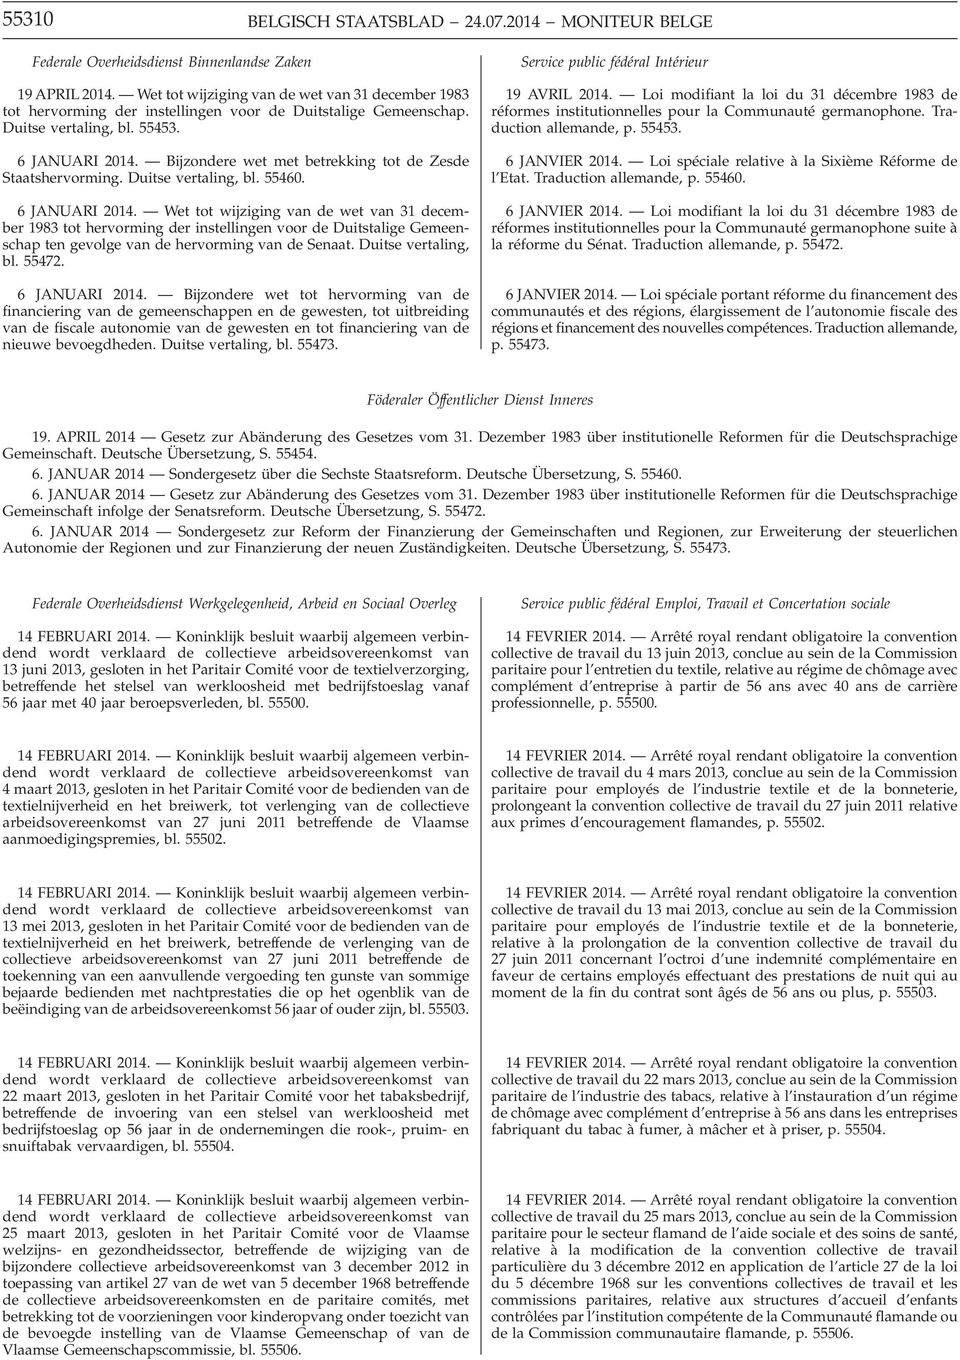 Bijzondere wet met betrekking tot de Zesde Staatshervorming. Duitse vertaling, bl. 55460. 6 JANUARI 2014.